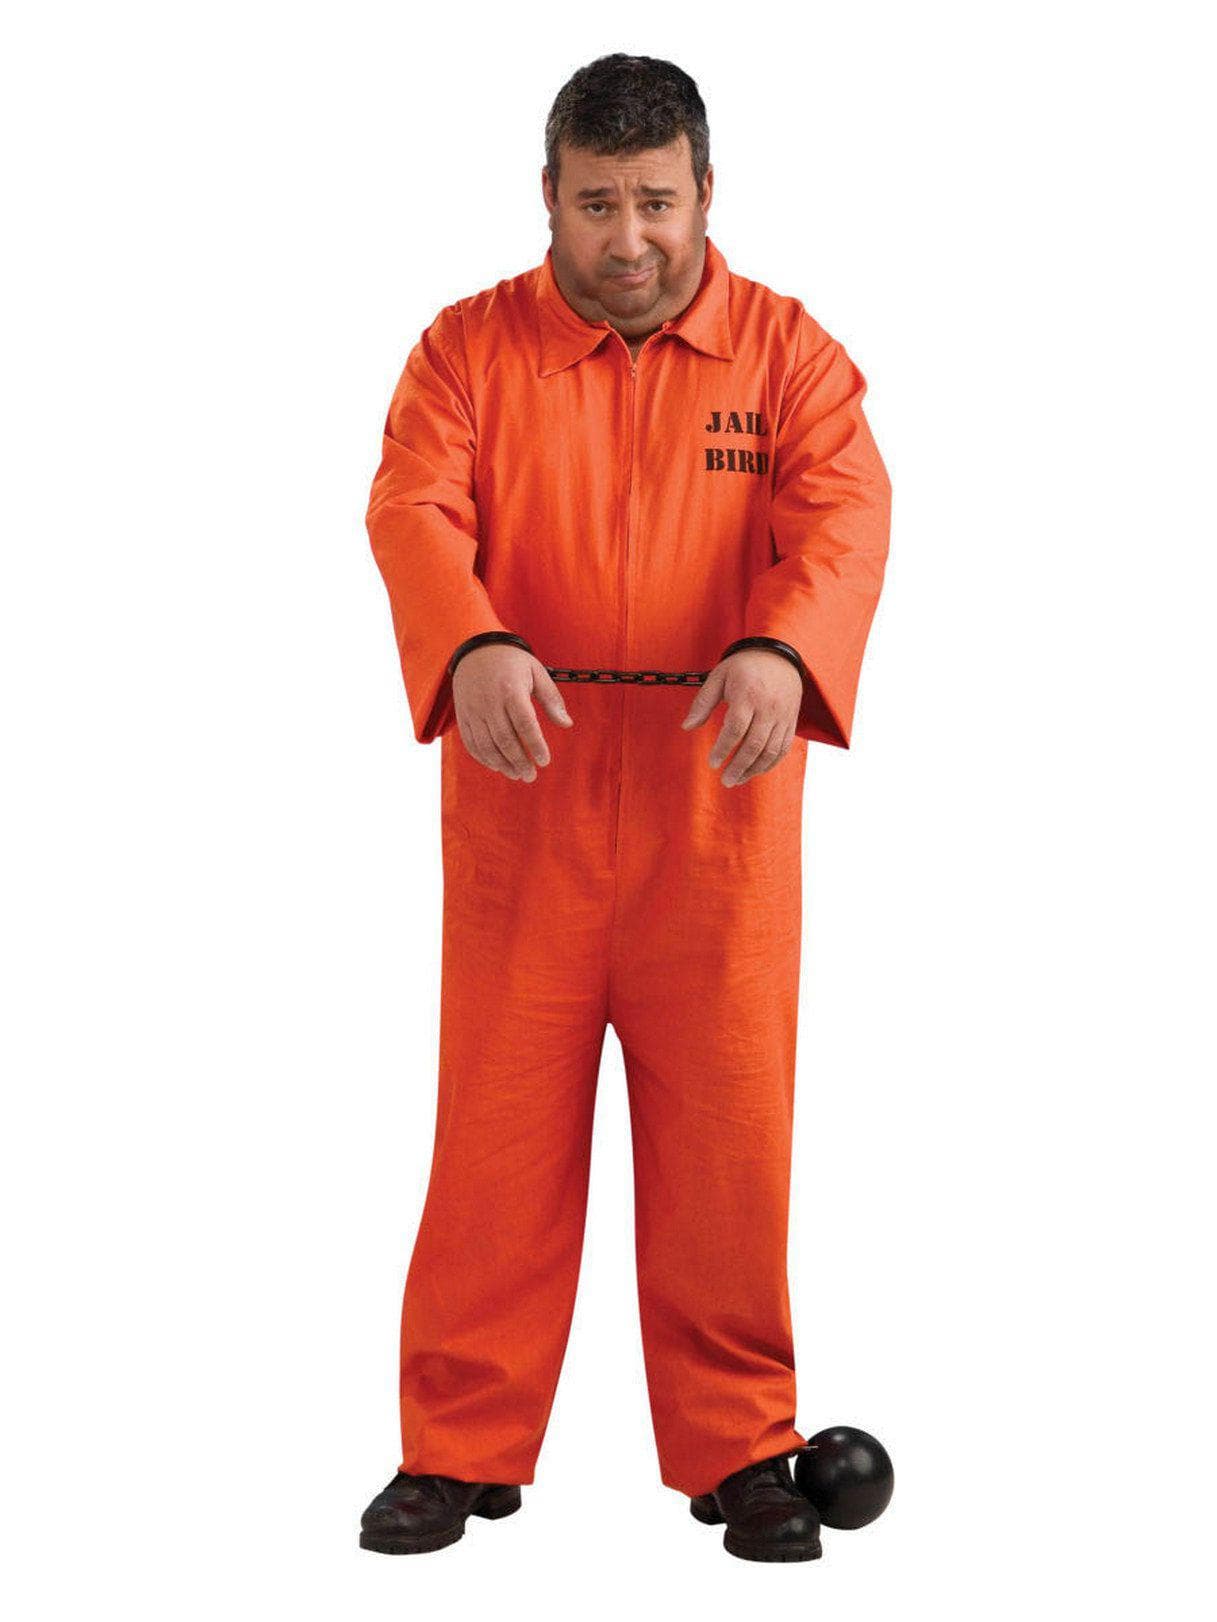 Adult Prisoner Costume - costumes.com